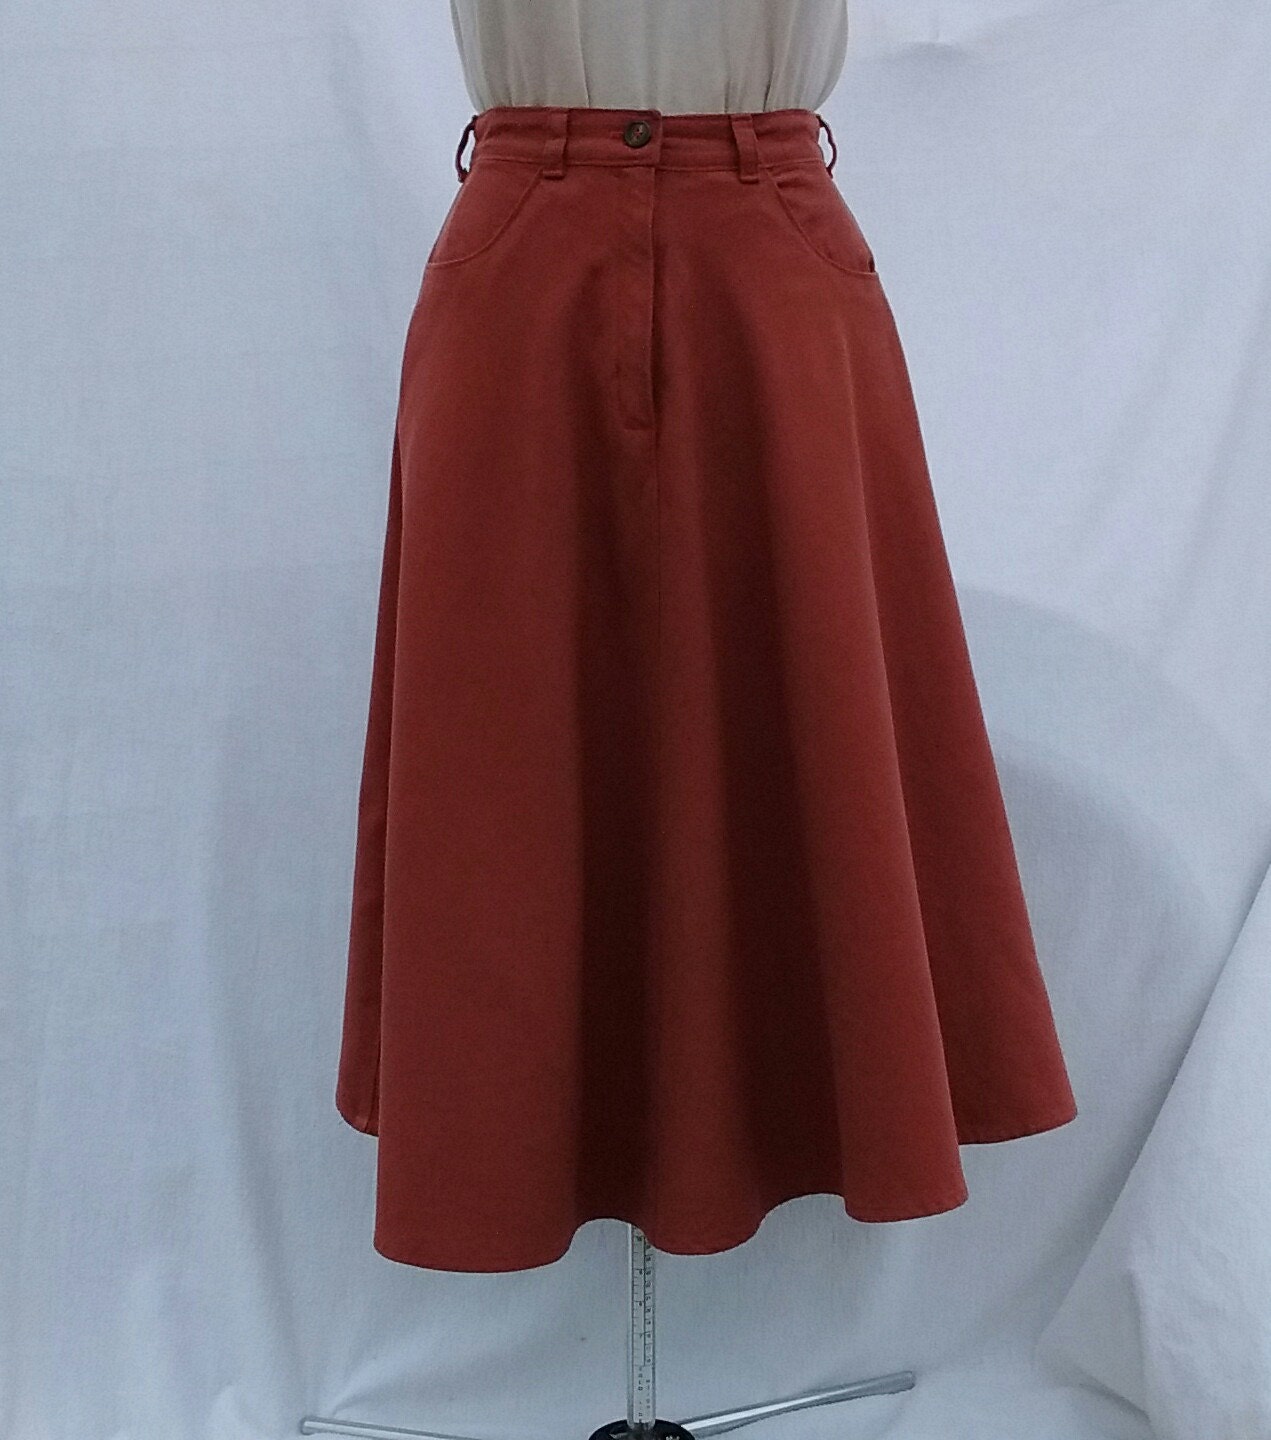 LONG MODEST SKIRT Girl's/Women's Skirt Skirt with